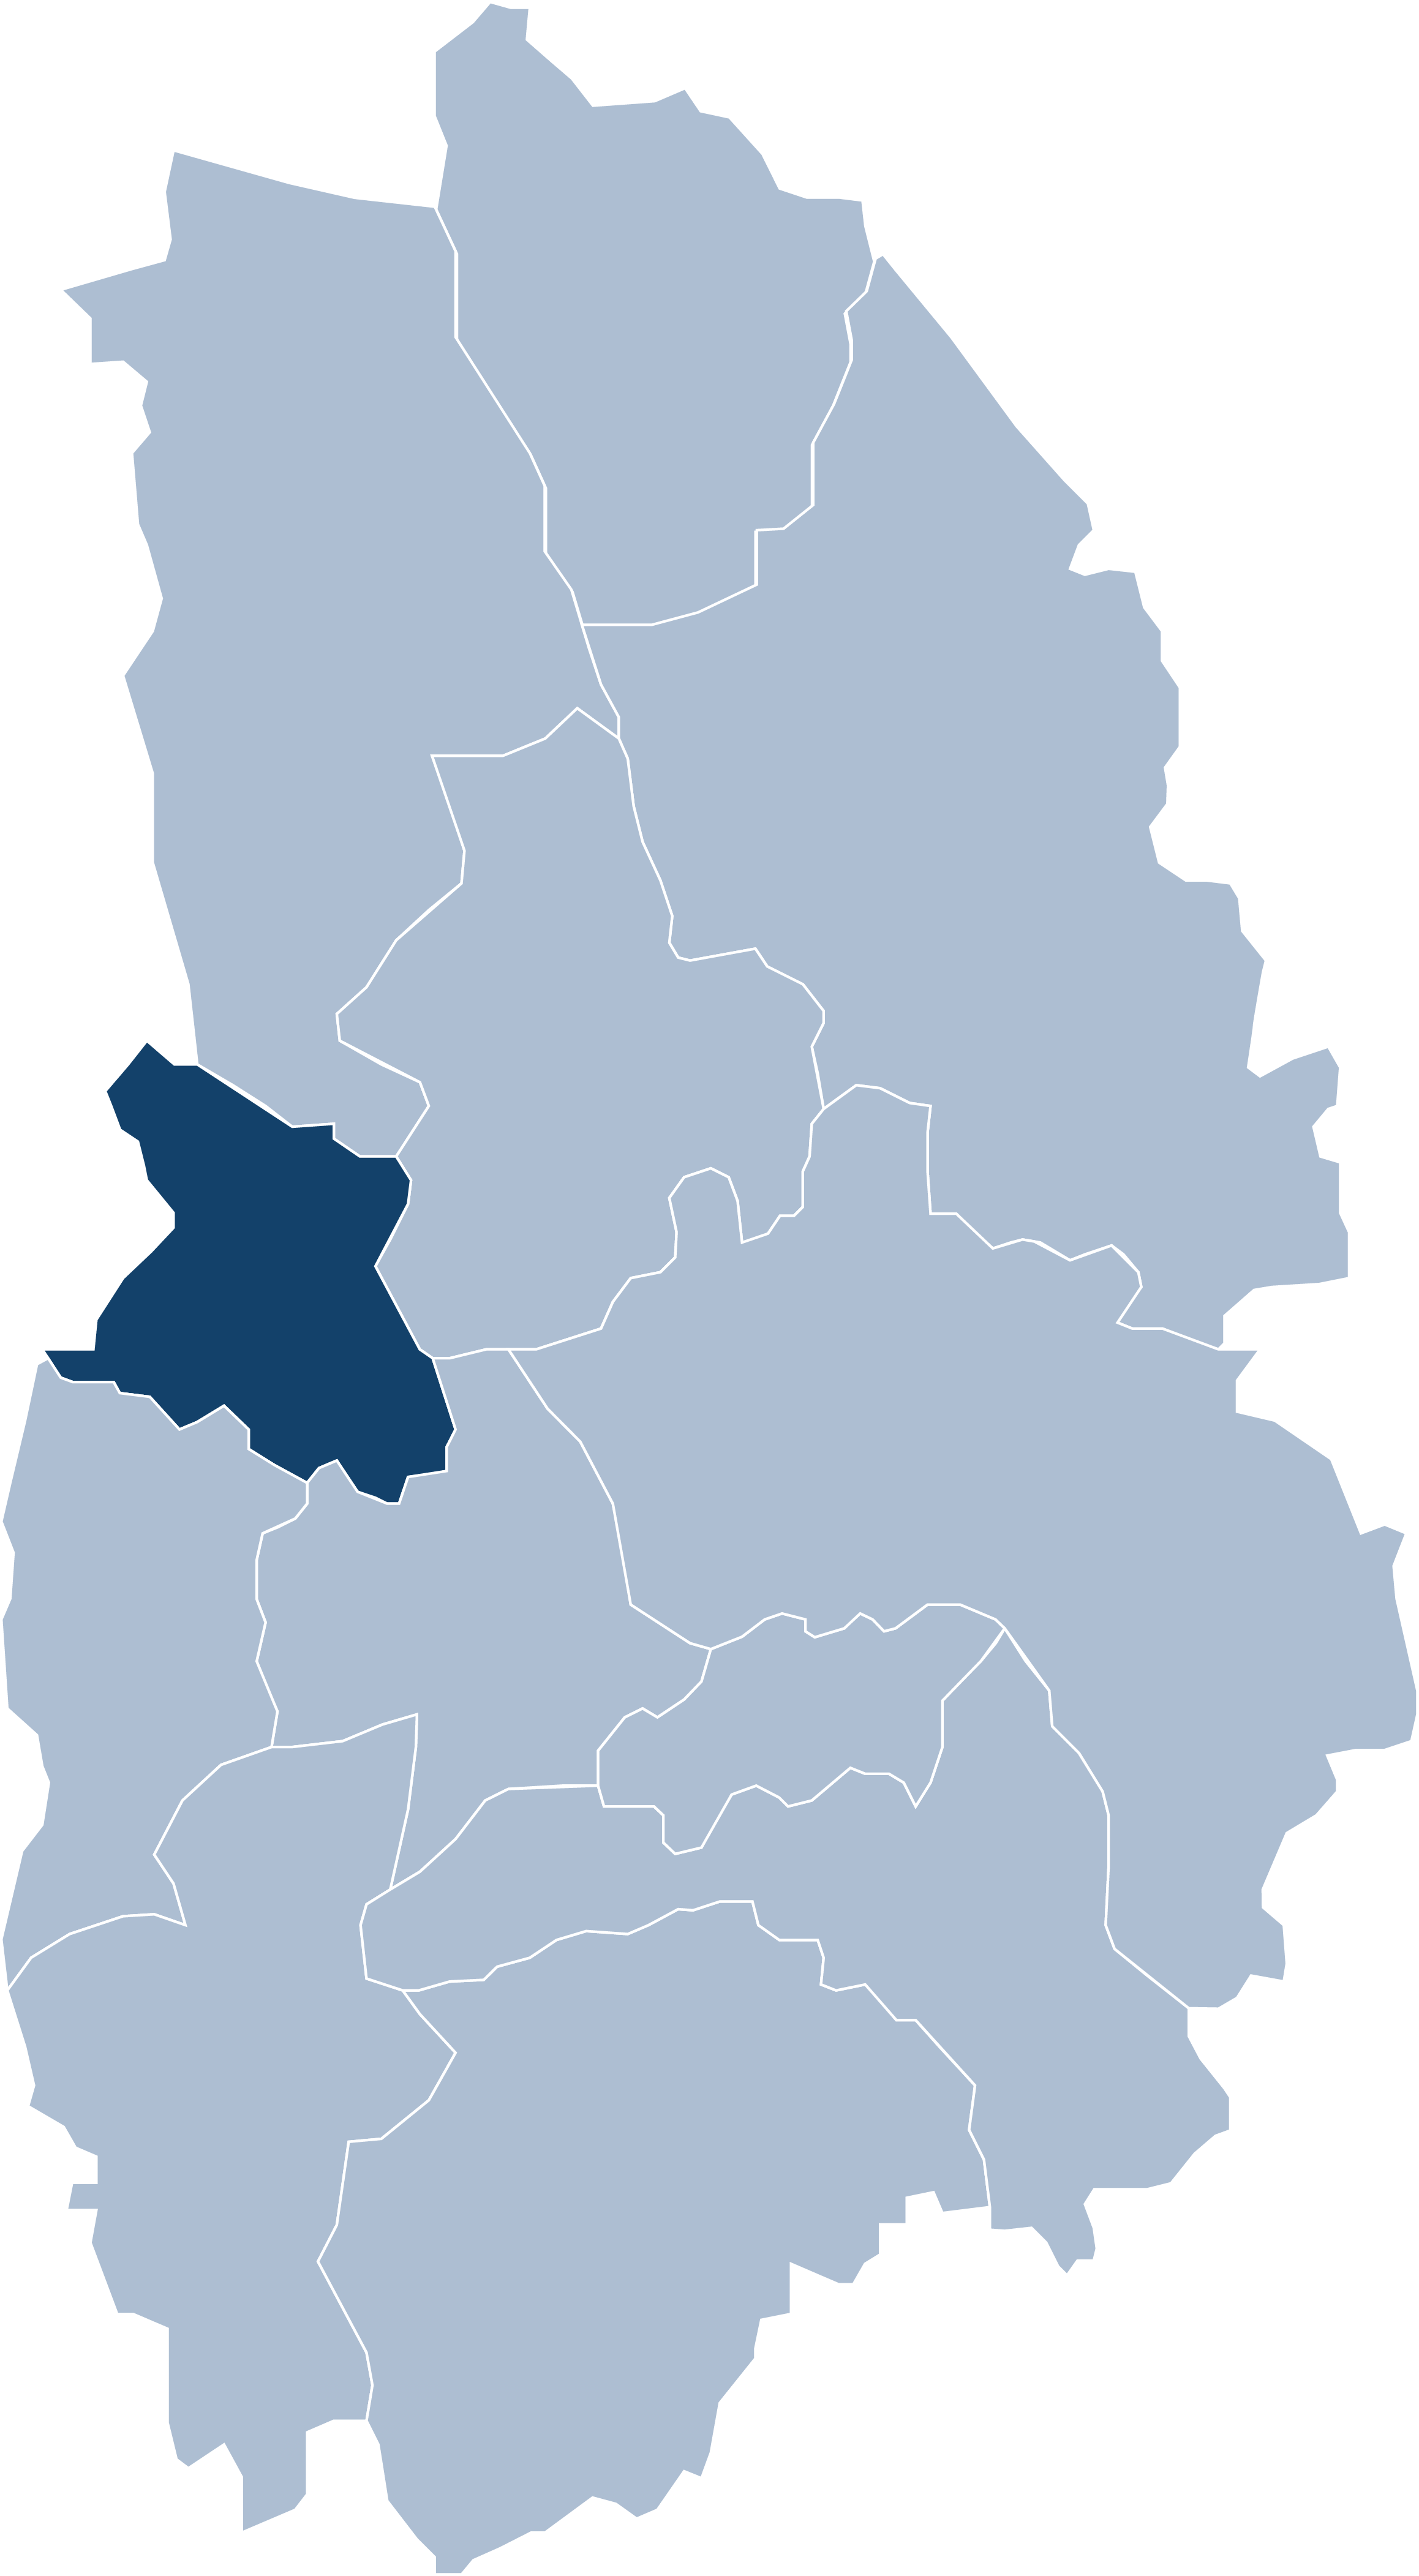 Karta över Örebro län, Karlskoga är markerat